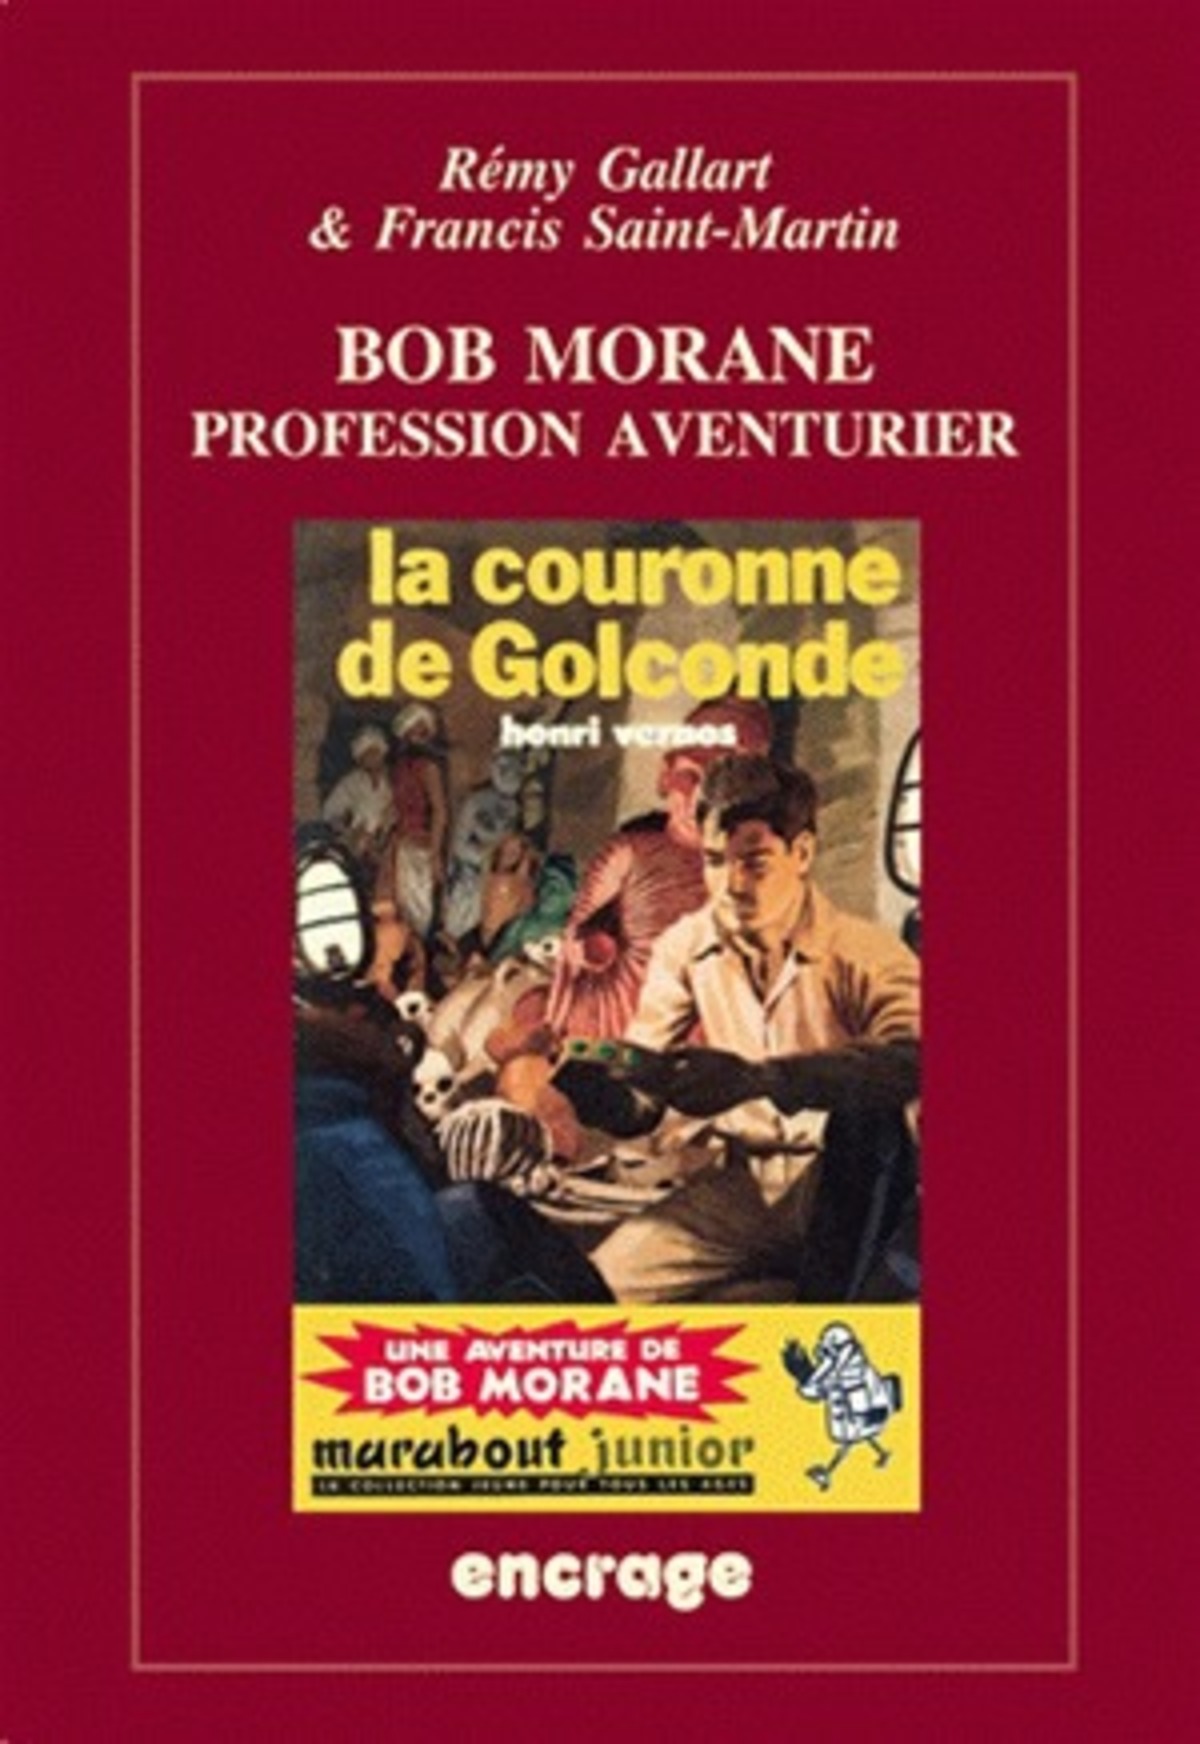 Bob Morane